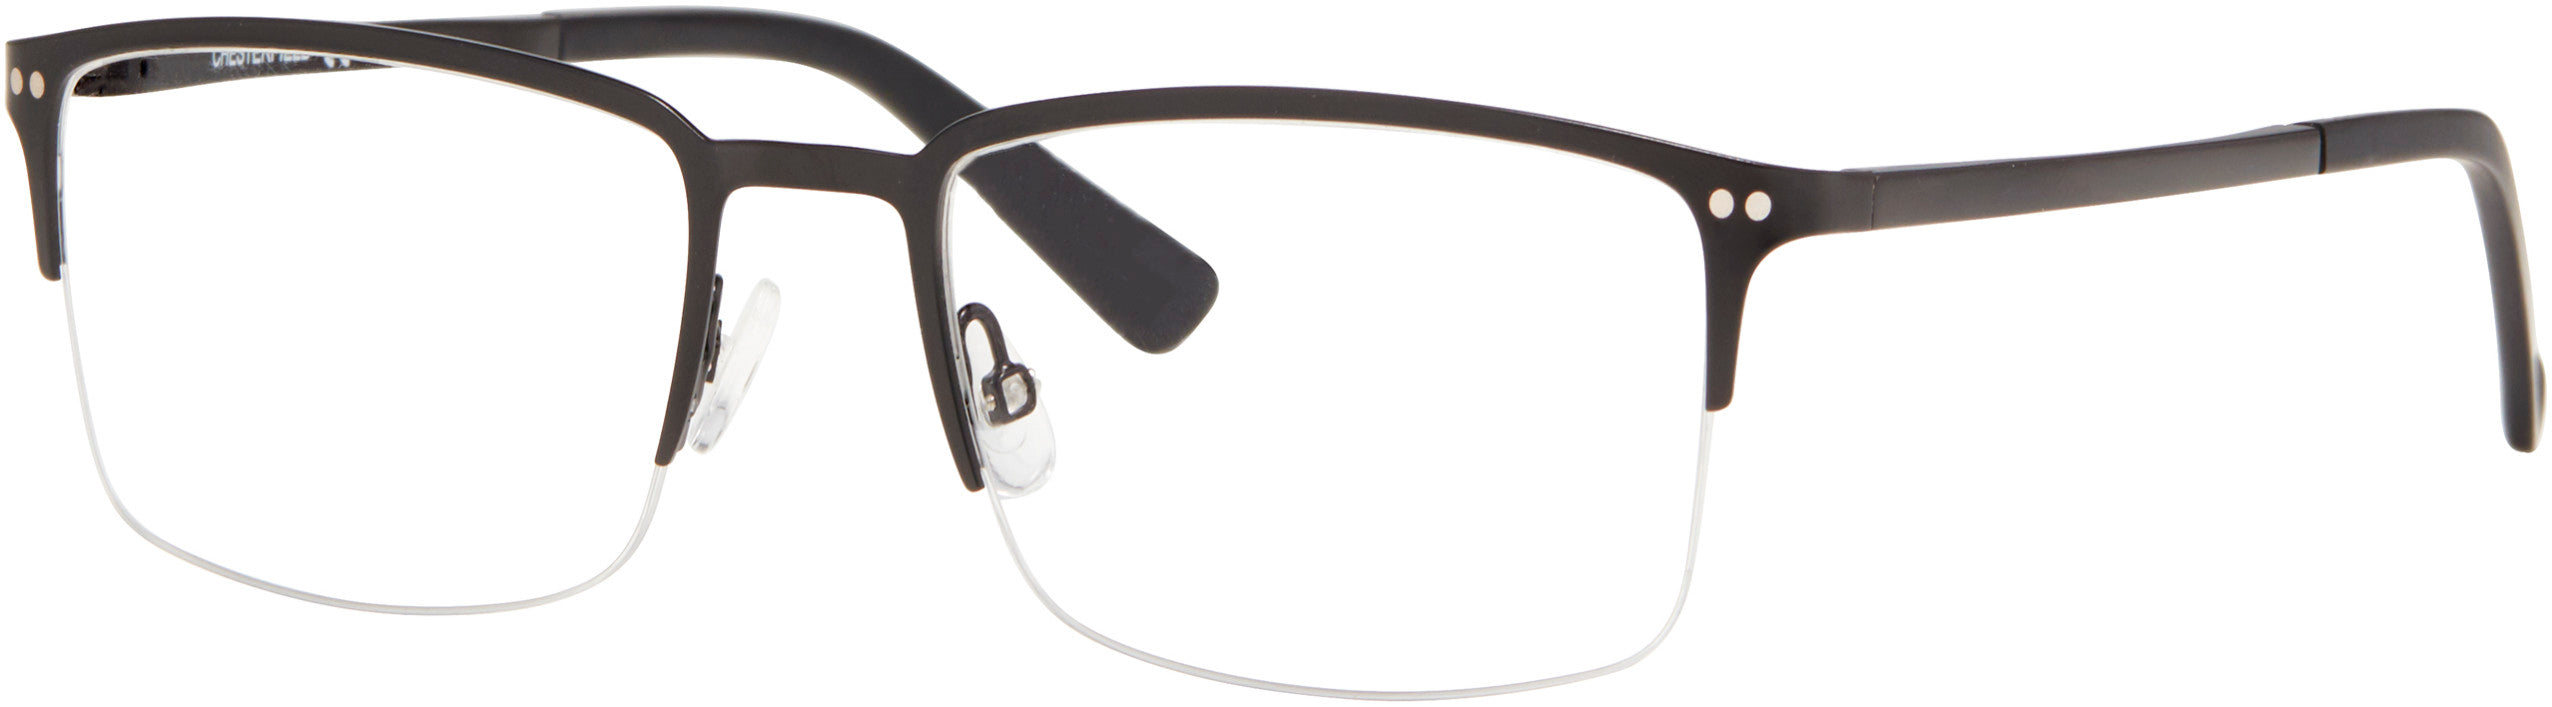  Chesterfield 84XL Rectangular Eyeglasses 0003-0003  Matte Black (00 Demo Lens)